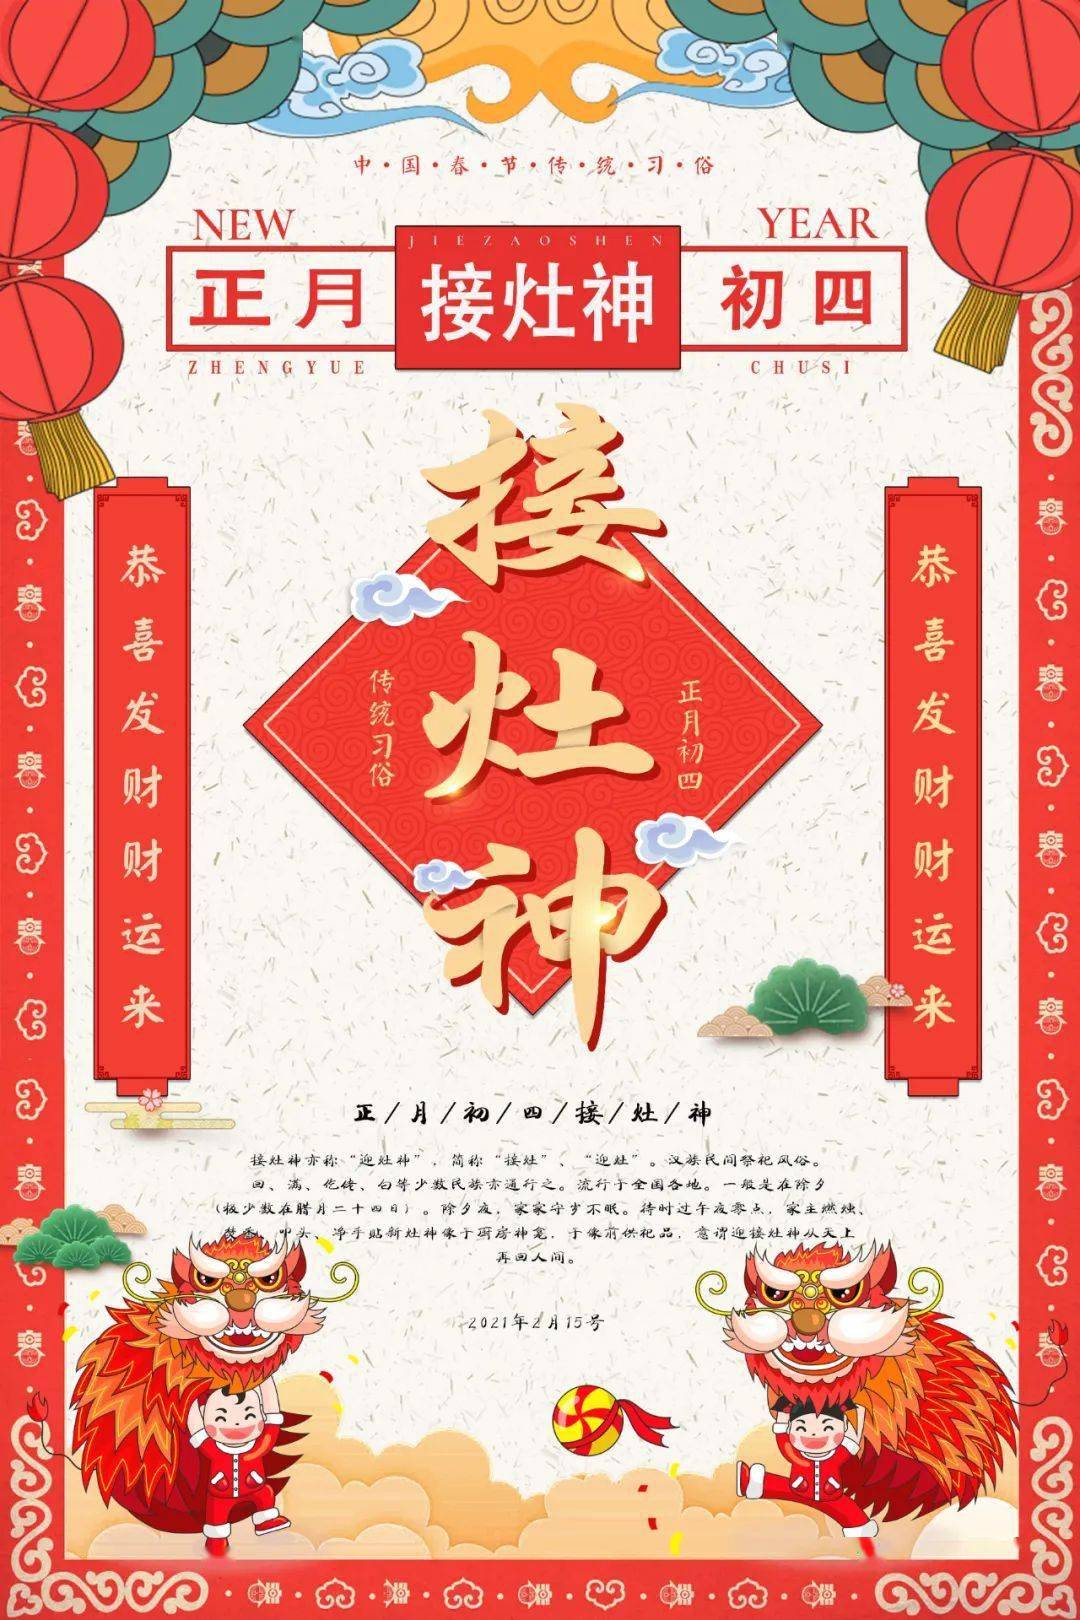 大年初四,农历正月初四(又称为羊日),是中国民间迎恭迎灶神回民间的